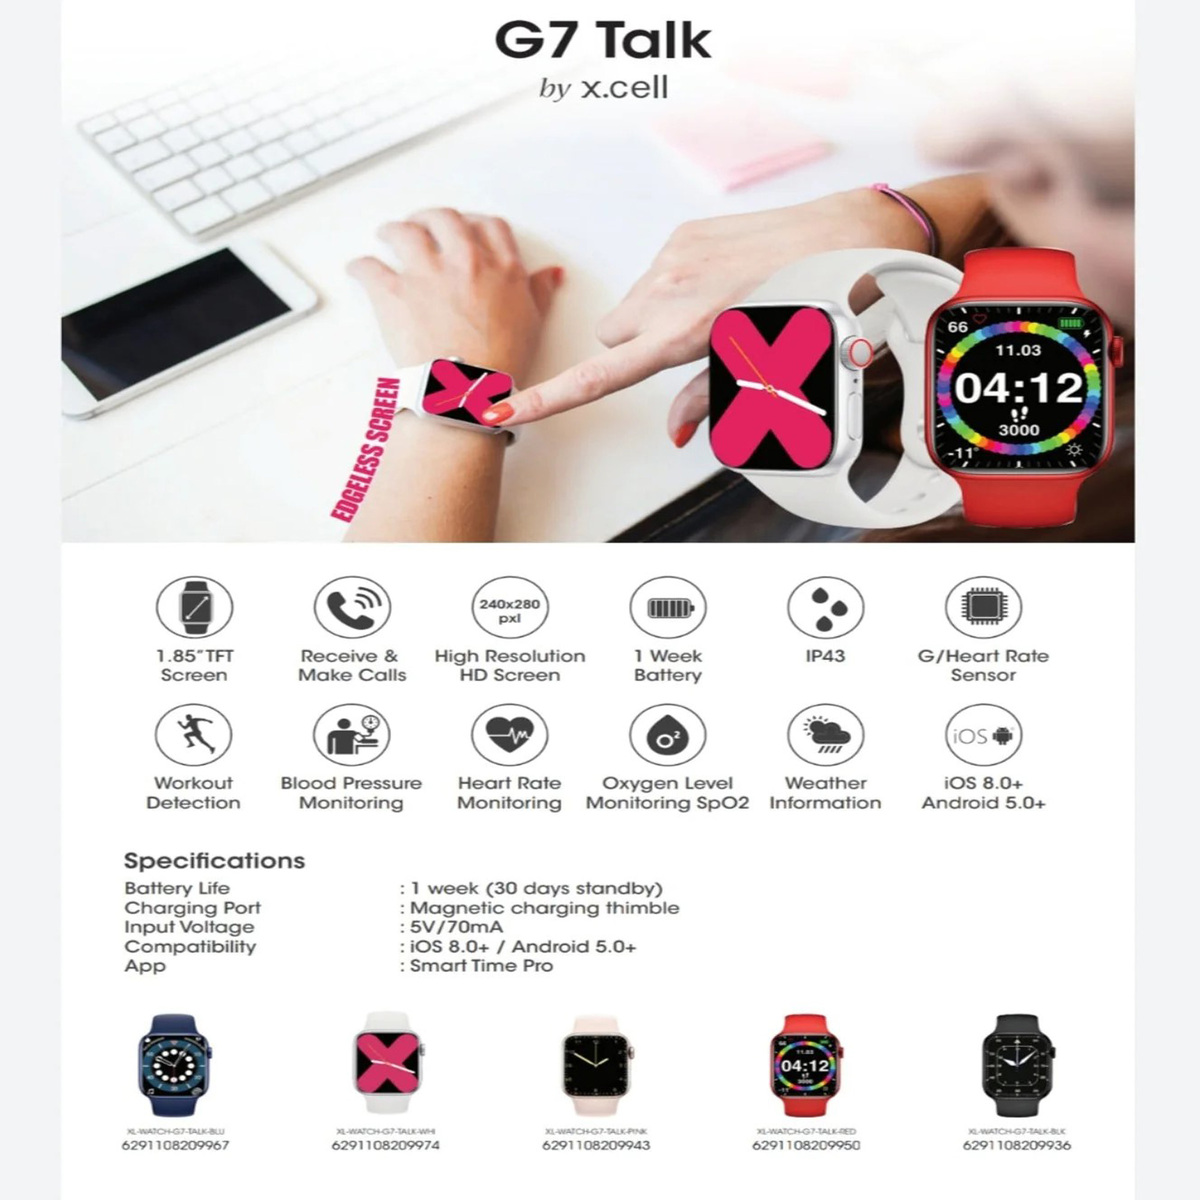 X.Cell Smart Watch G7 Talk, Blue